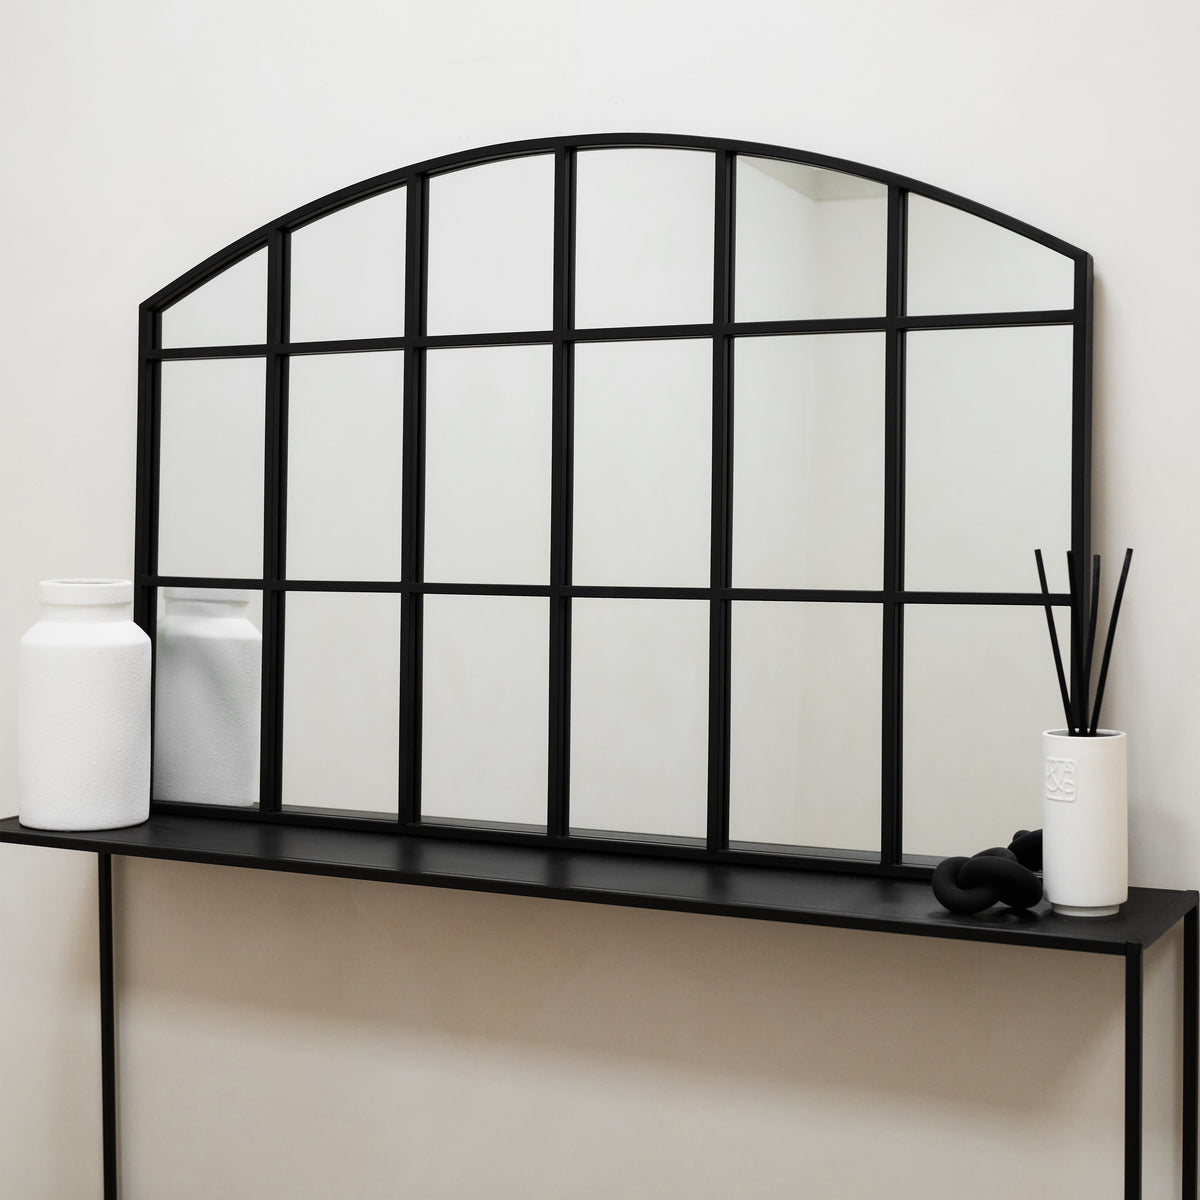 Bridgewater - Miroir de fenêtre en métal arqué industriel noir 120 cm x 80 cm